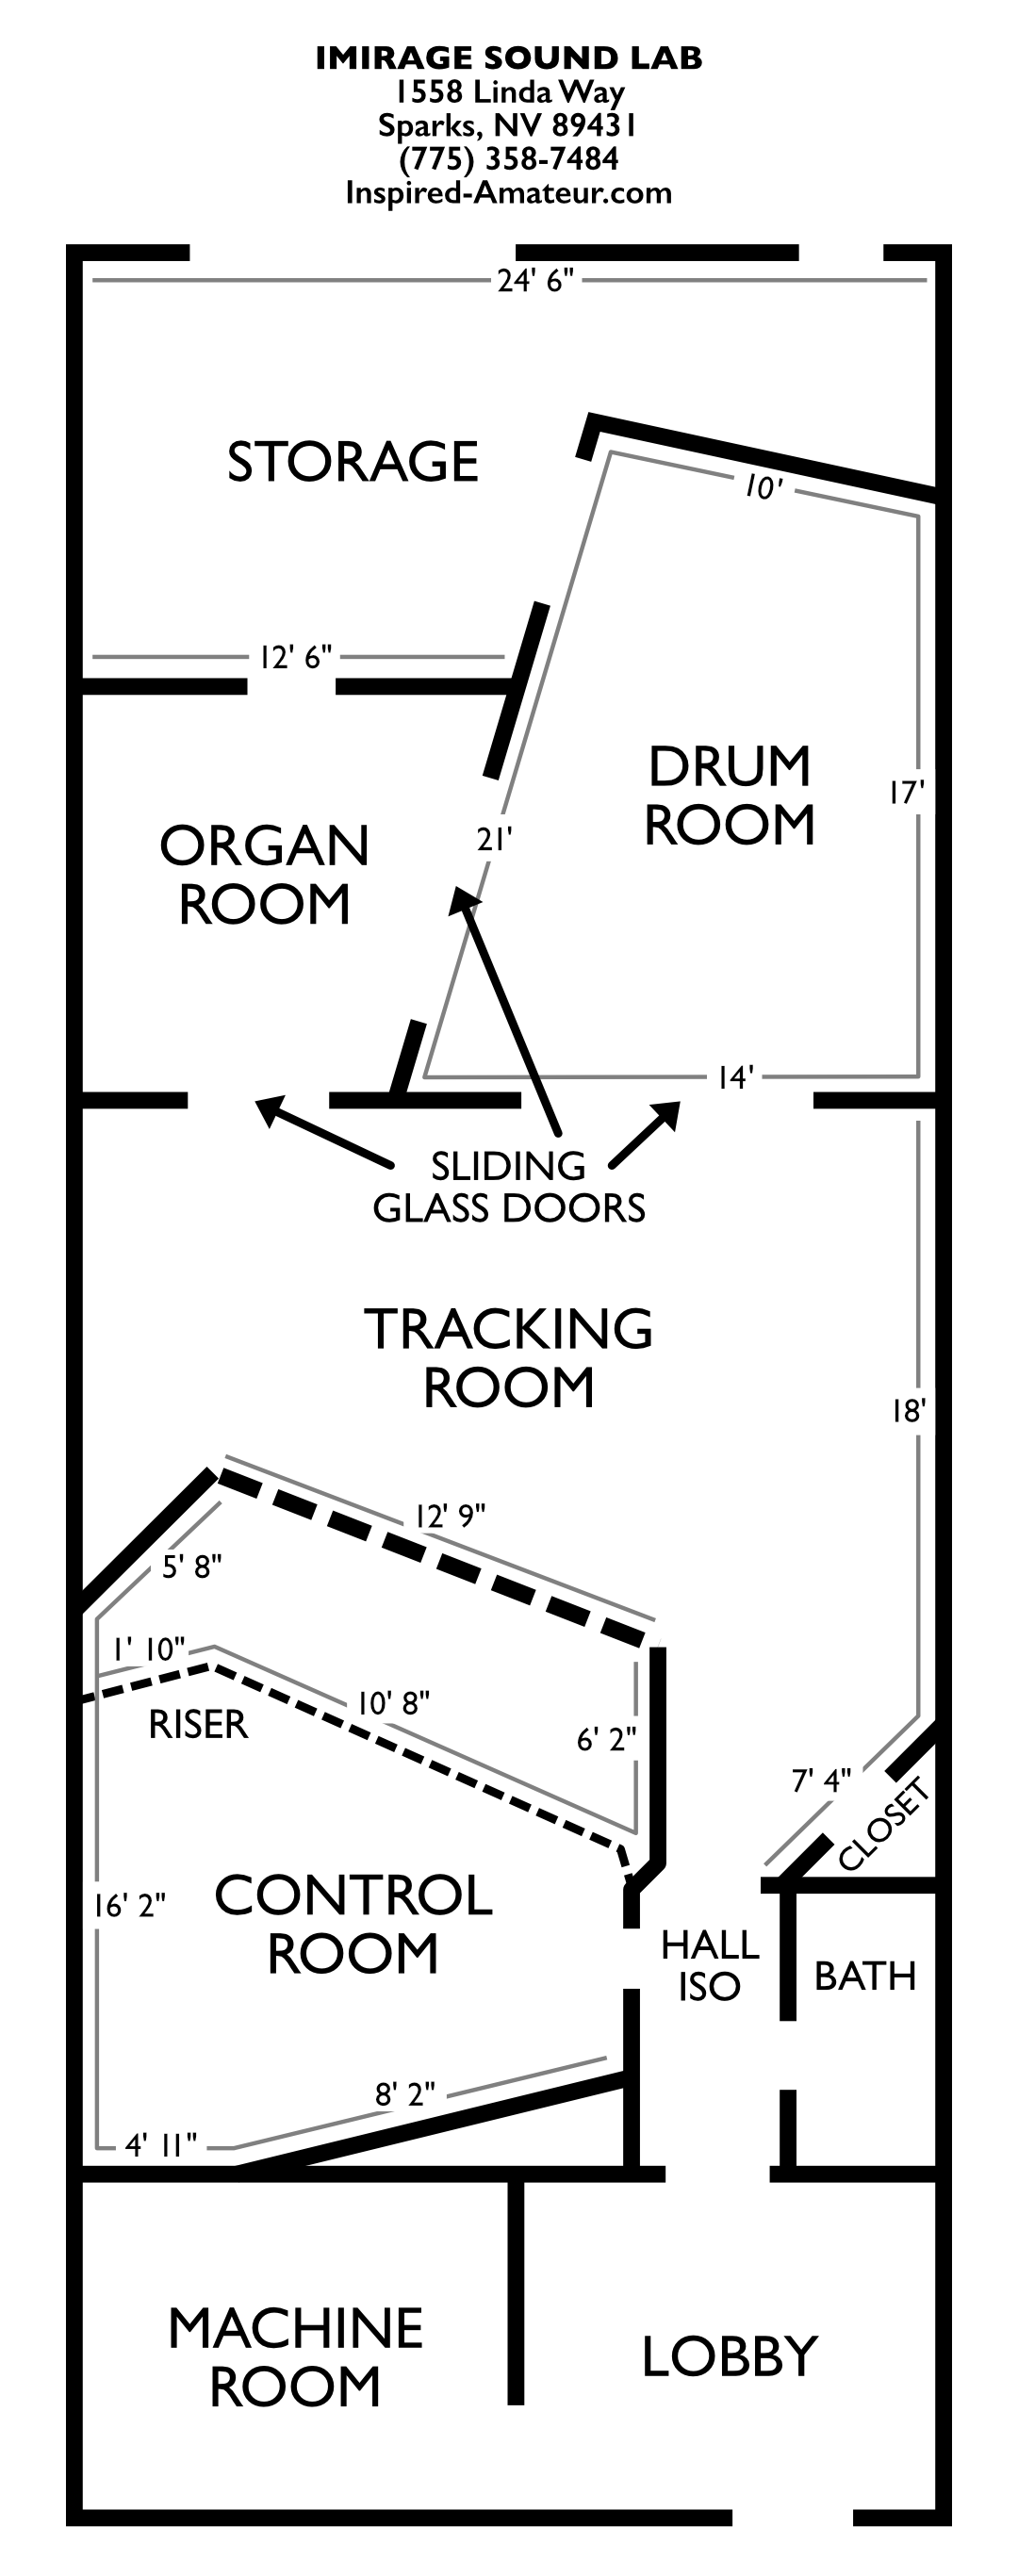 Imirage Sound Lab Floor Plan